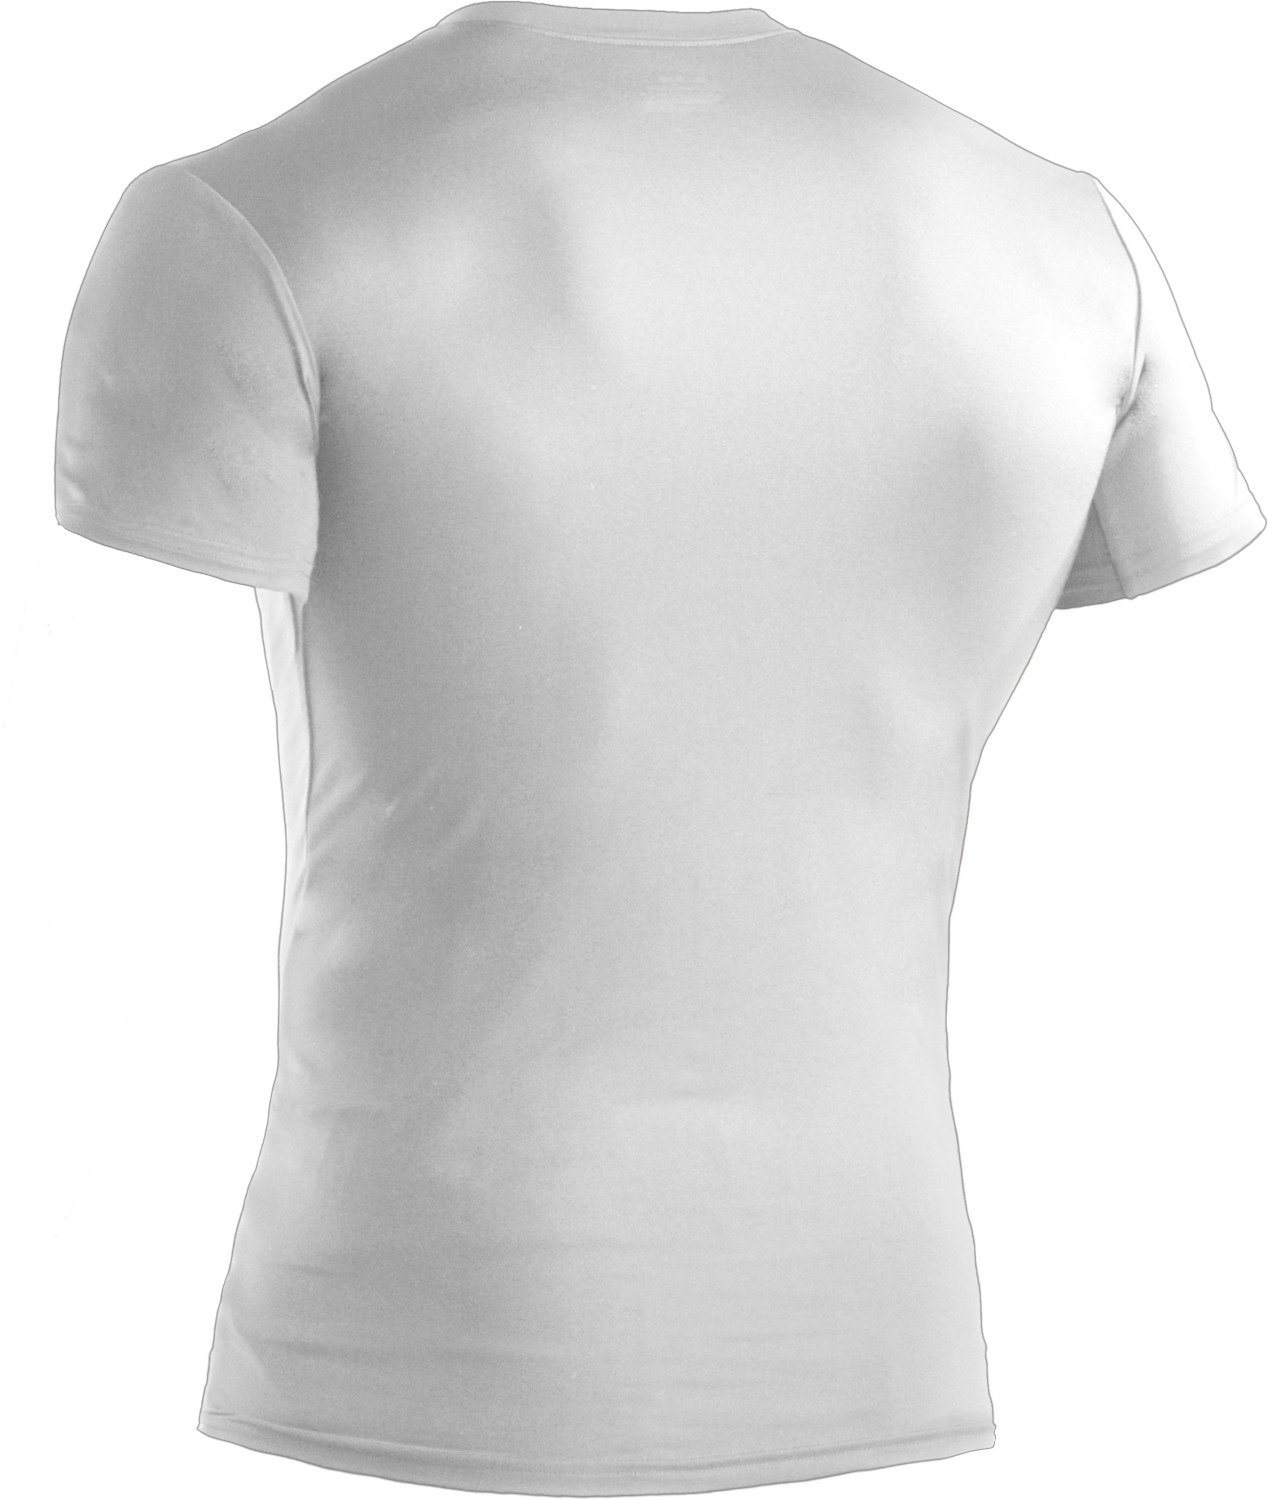 Under Armour® Men's Tactical HeatGear® Compression V-neck T-shirt